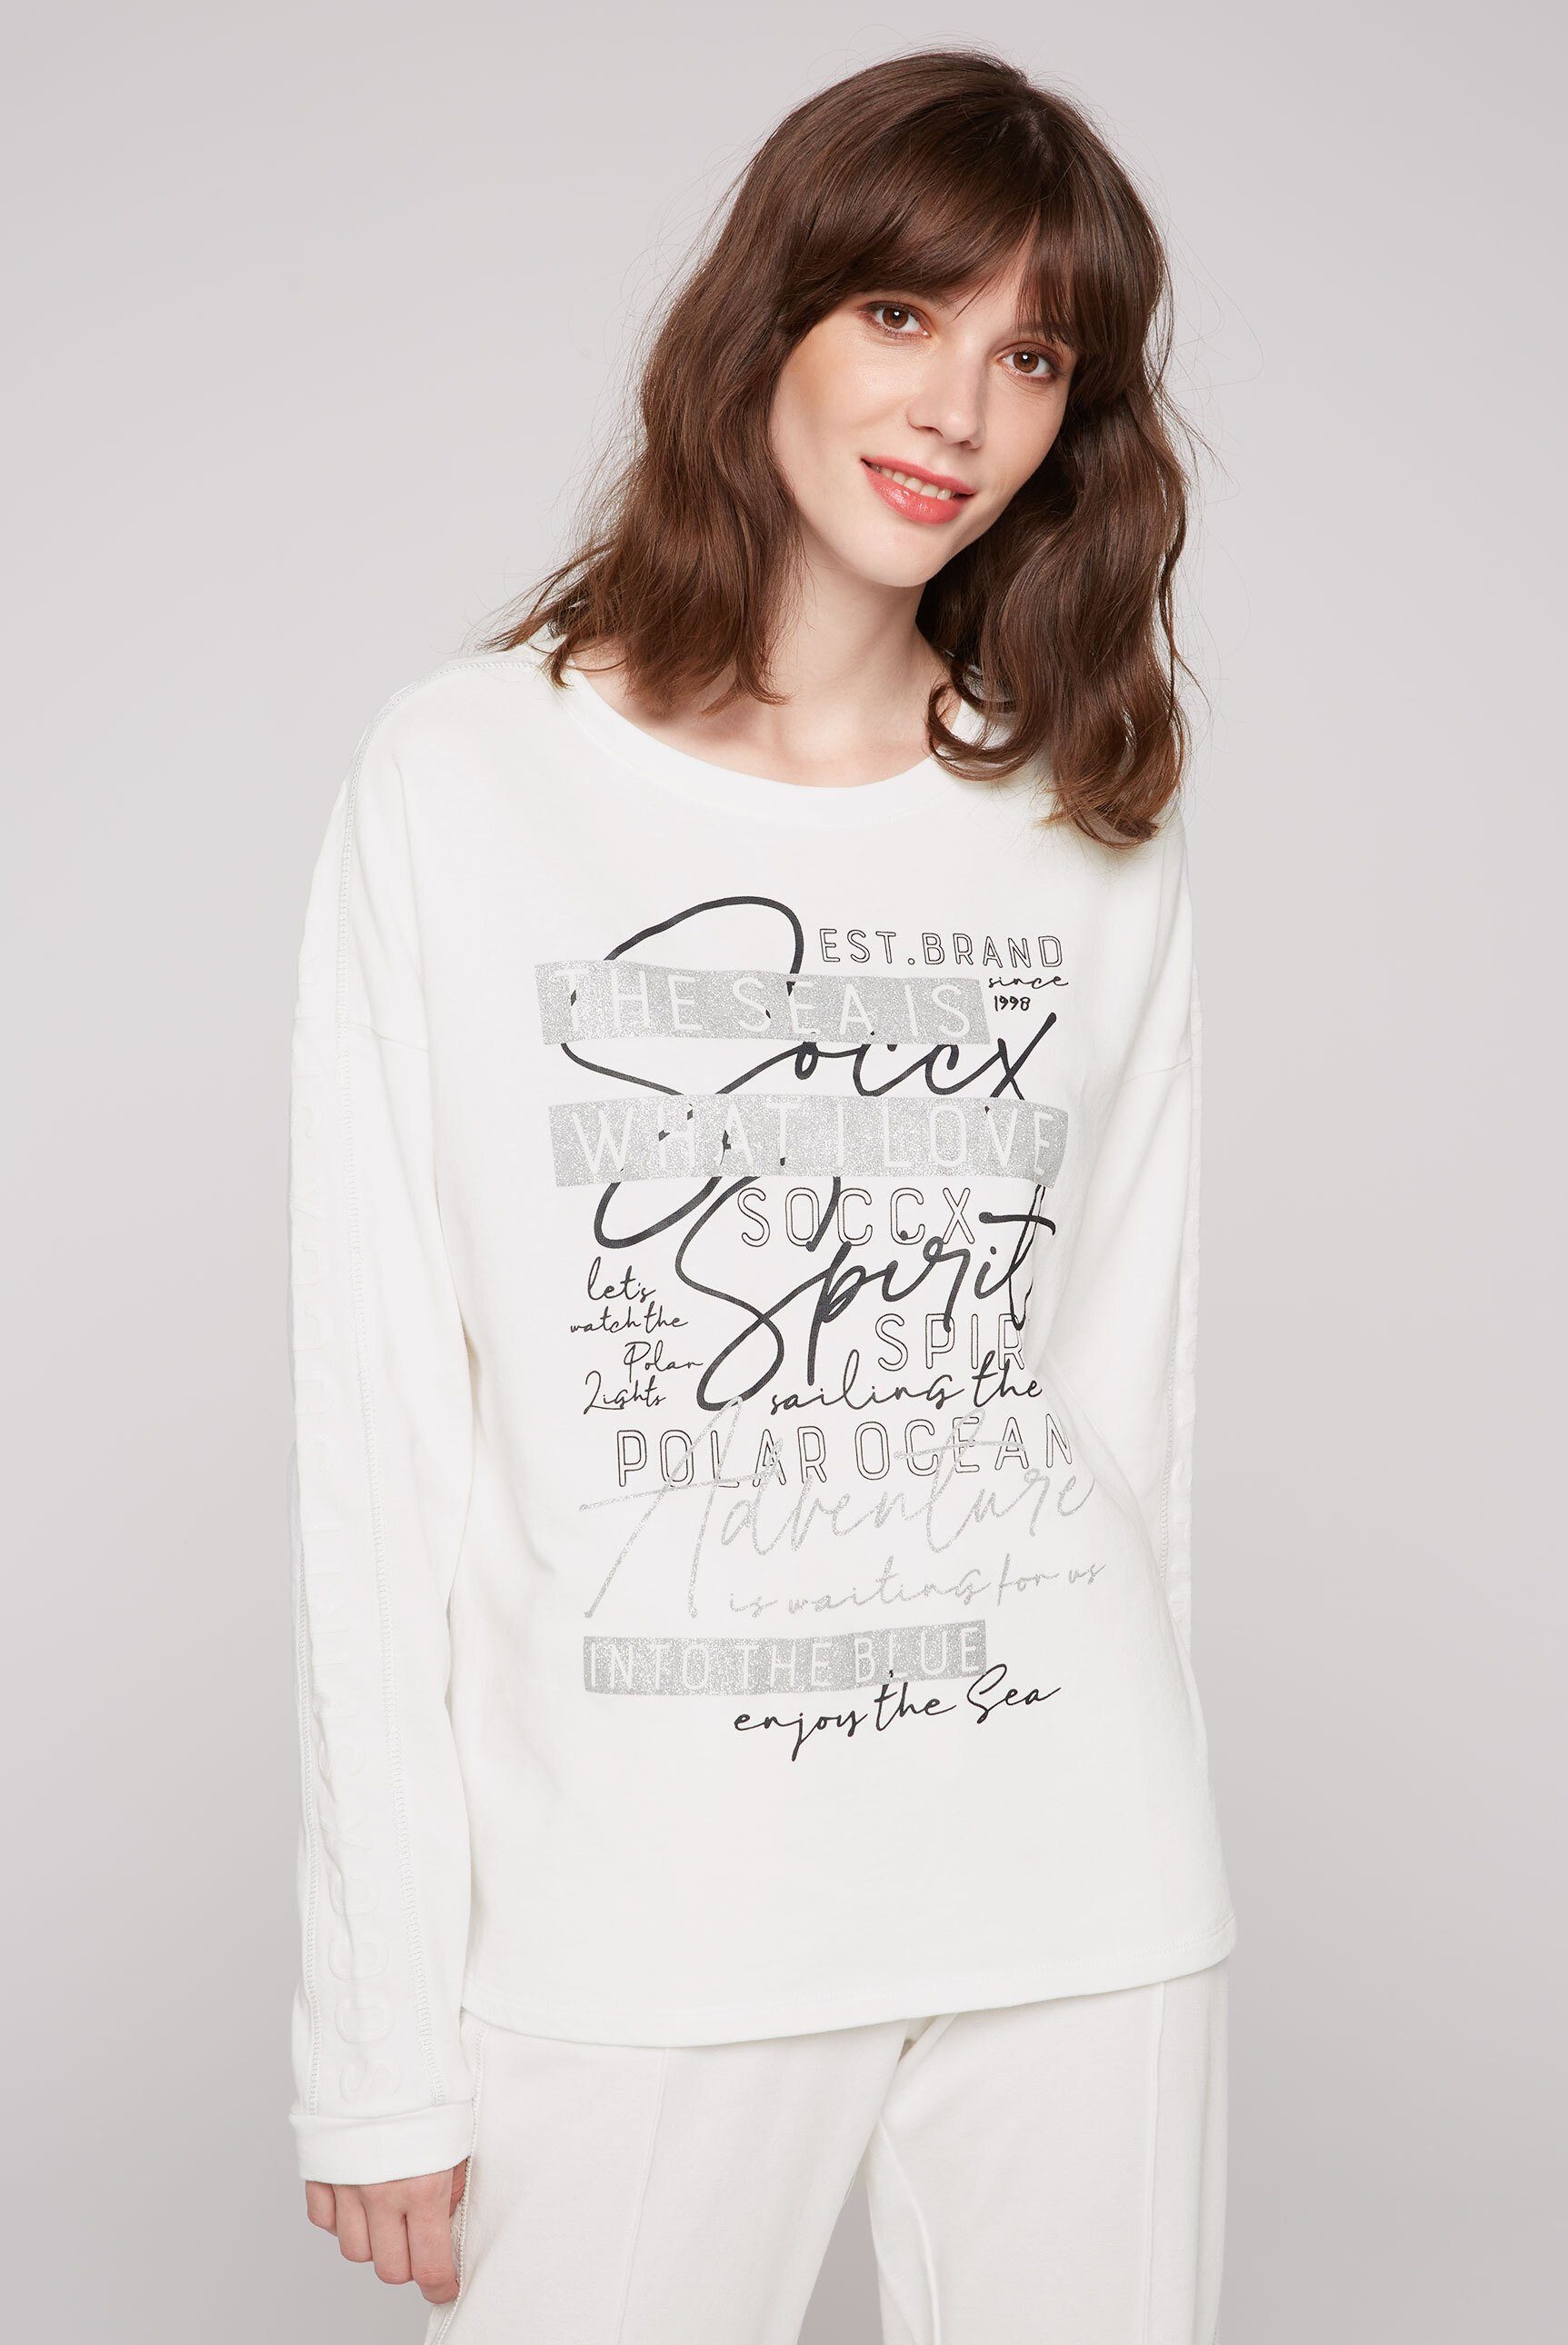 SOCCX Sweatshirt (1-tlg) online kaufen | OTTO